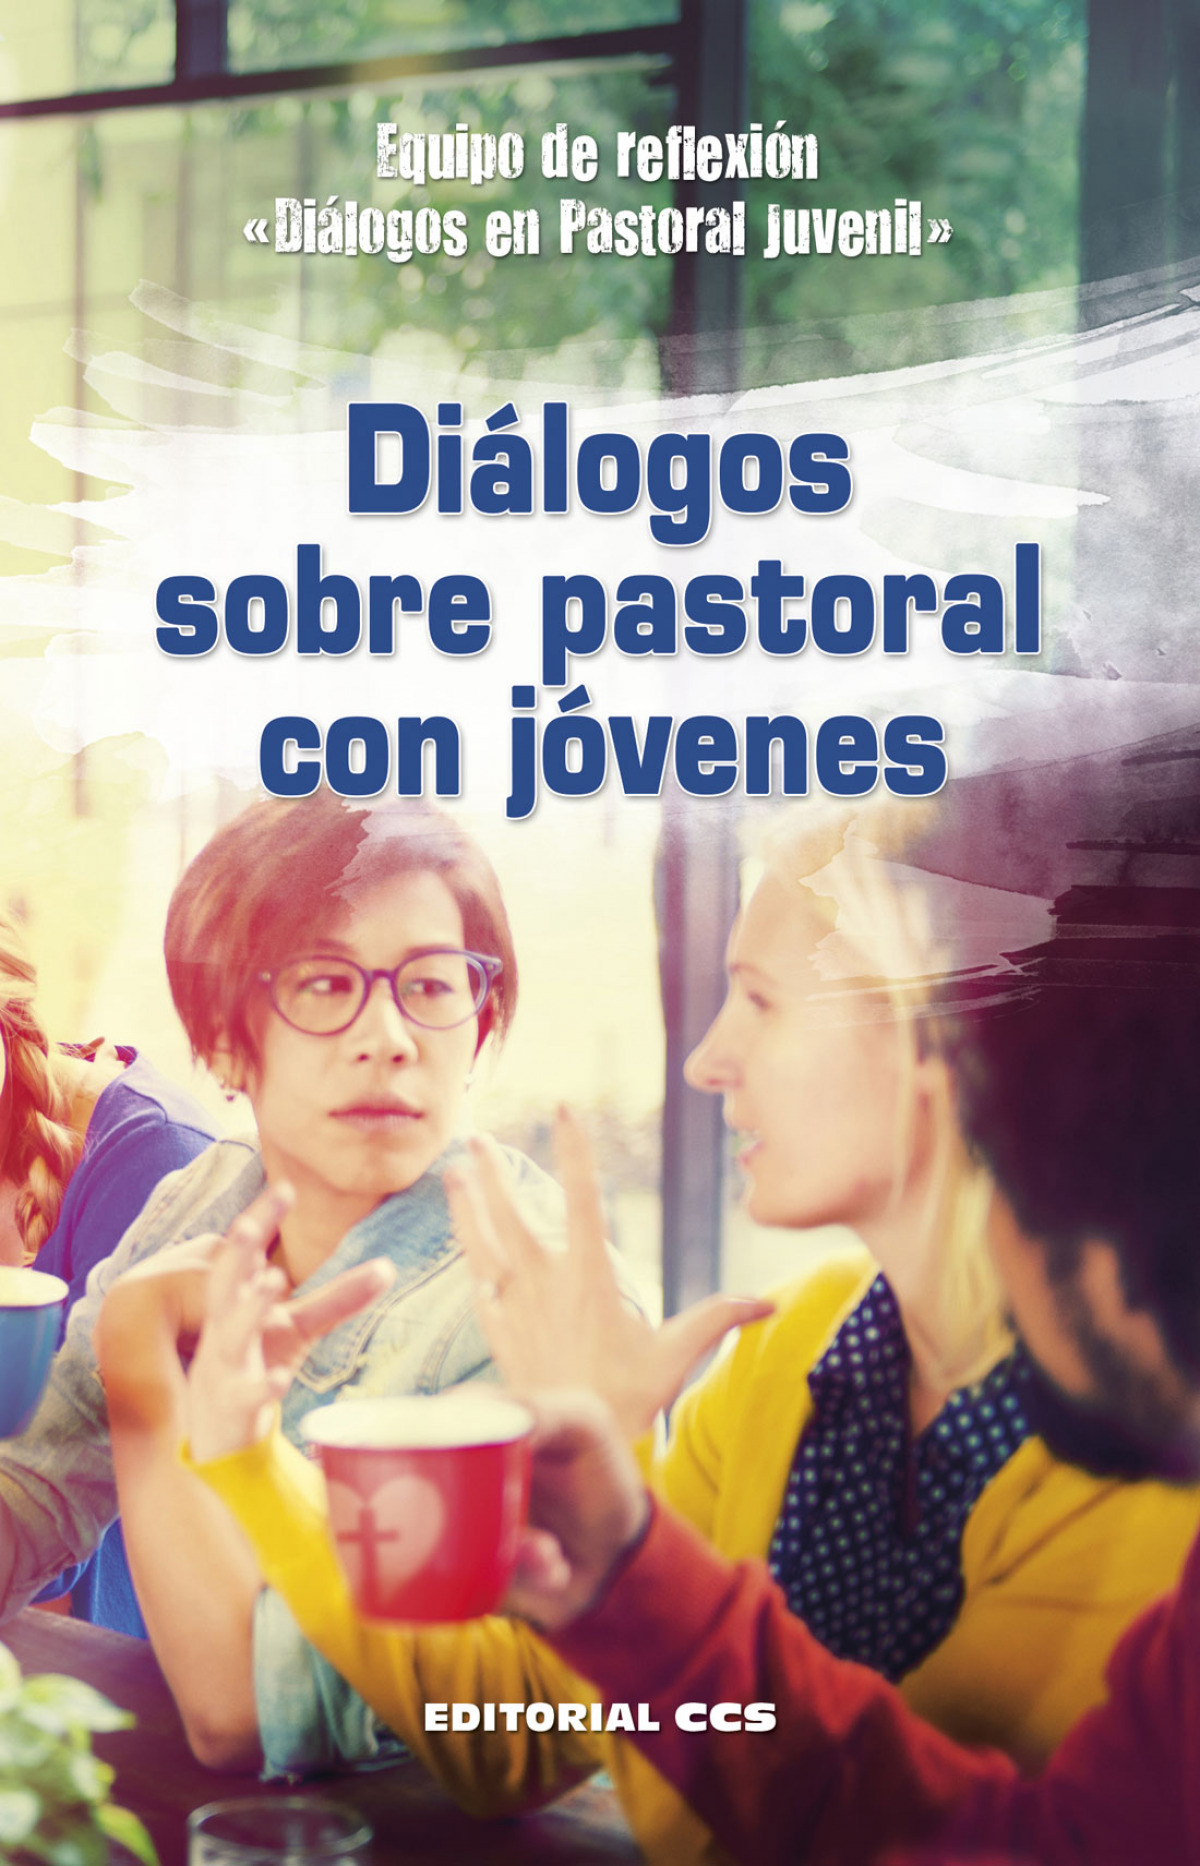 Dialogos sobre pastoral con jovenes (Agentes PJ)